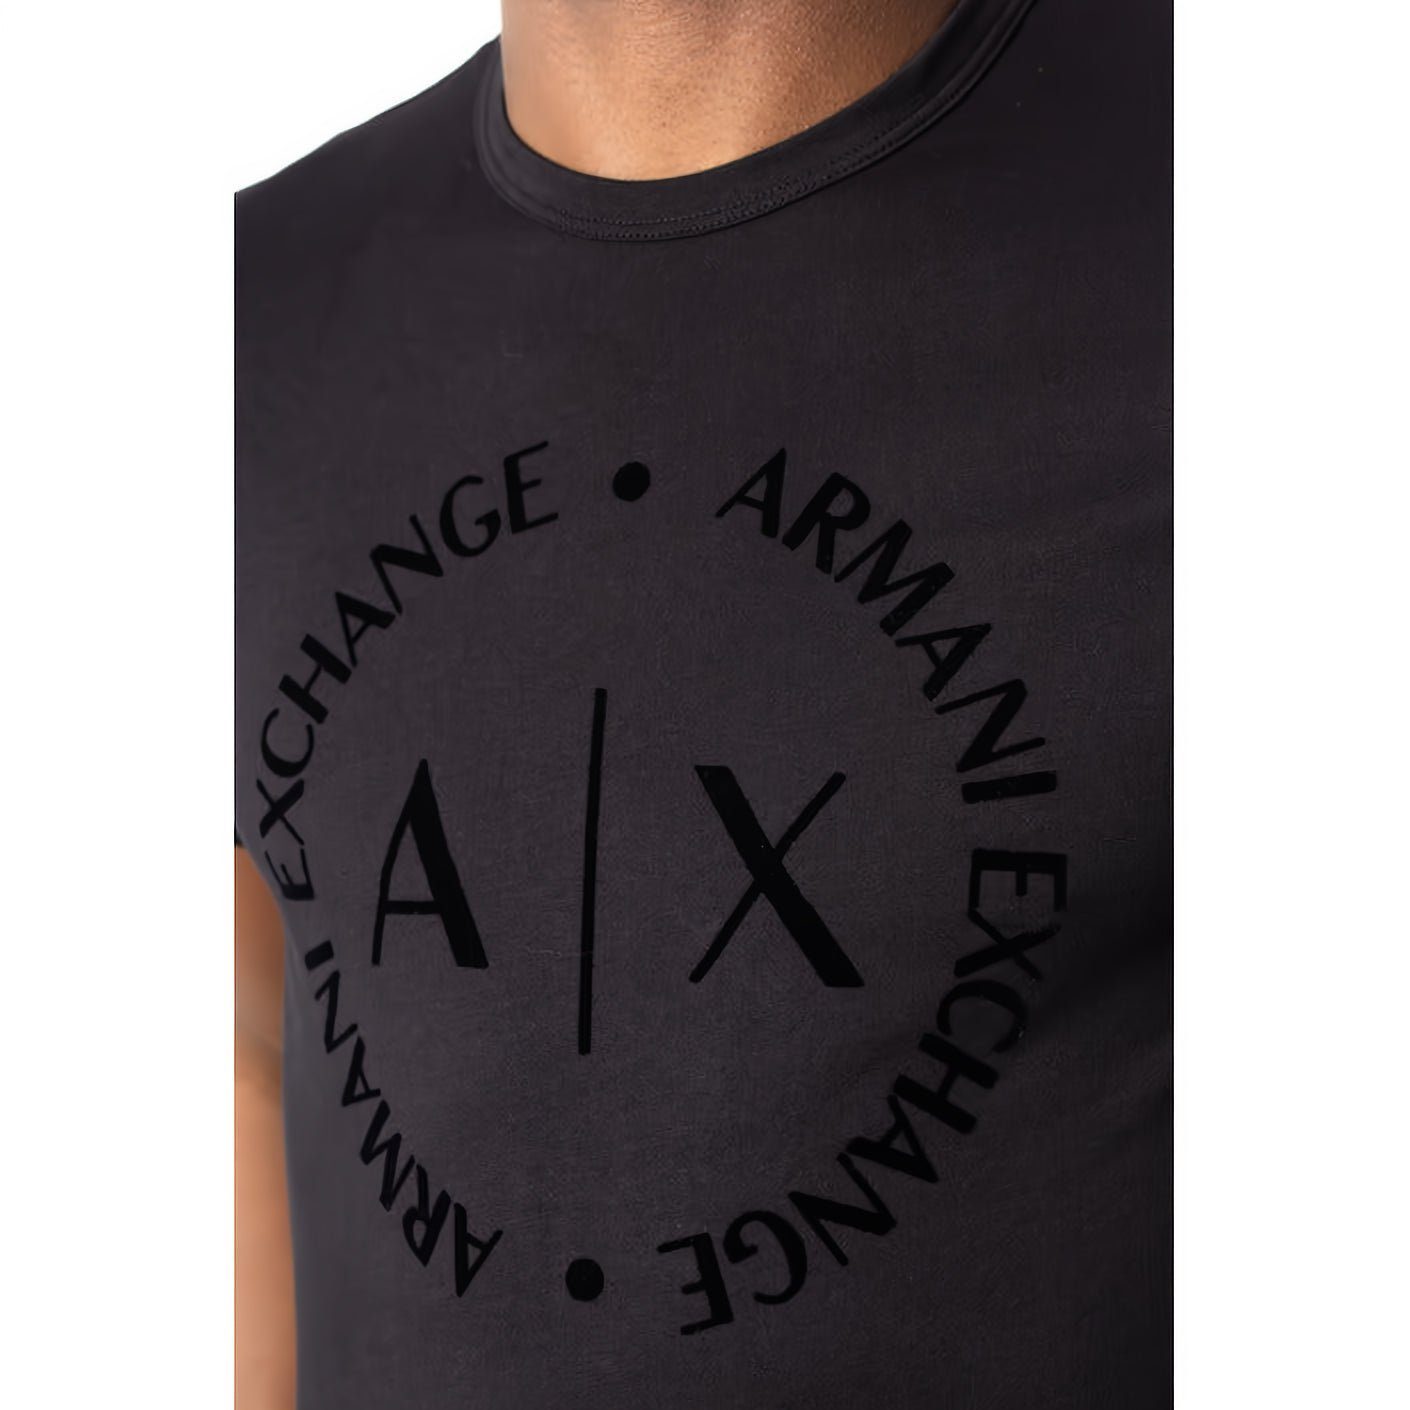 ARMANI EXCHANGE T-Shirt kurzarm, für Rundhals, Ihre Must-Have Kleidungskollektion! ein